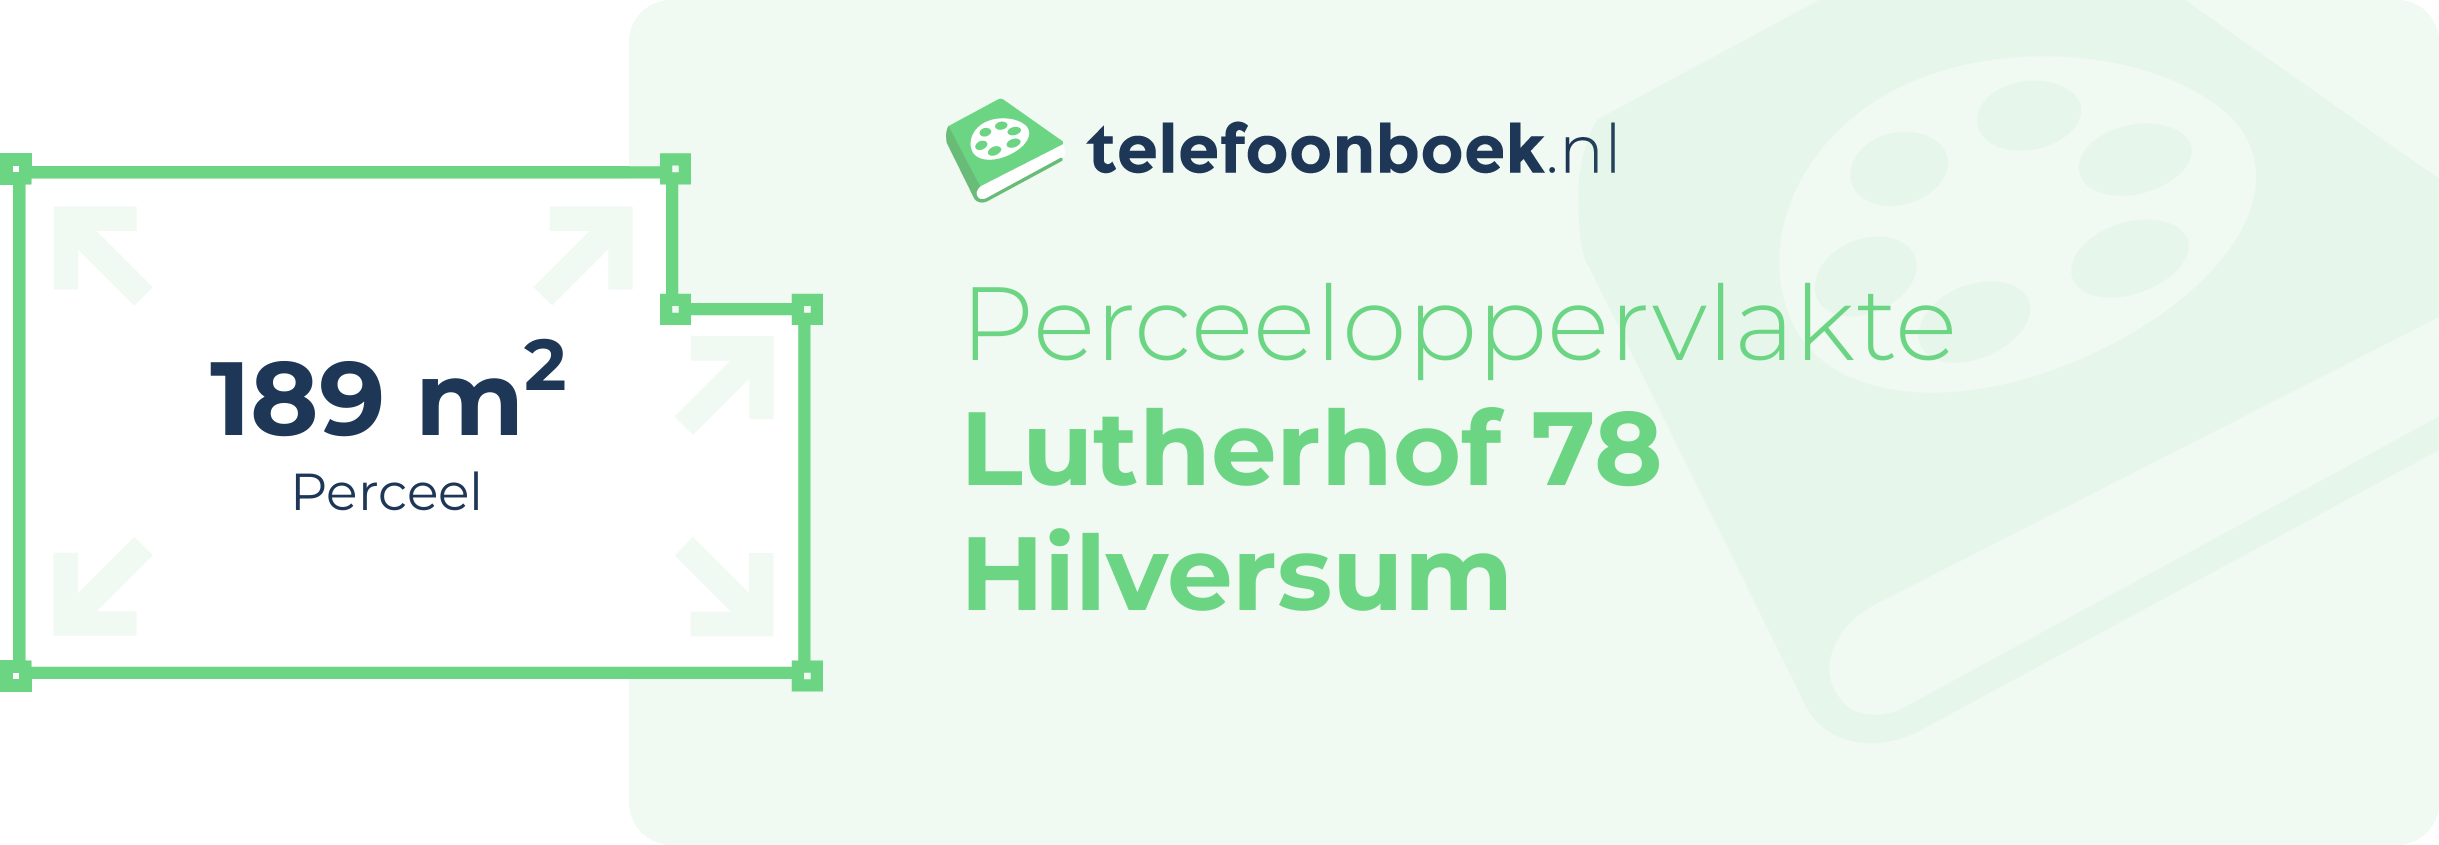 Perceeloppervlakte Lutherhof 78 Hilversum